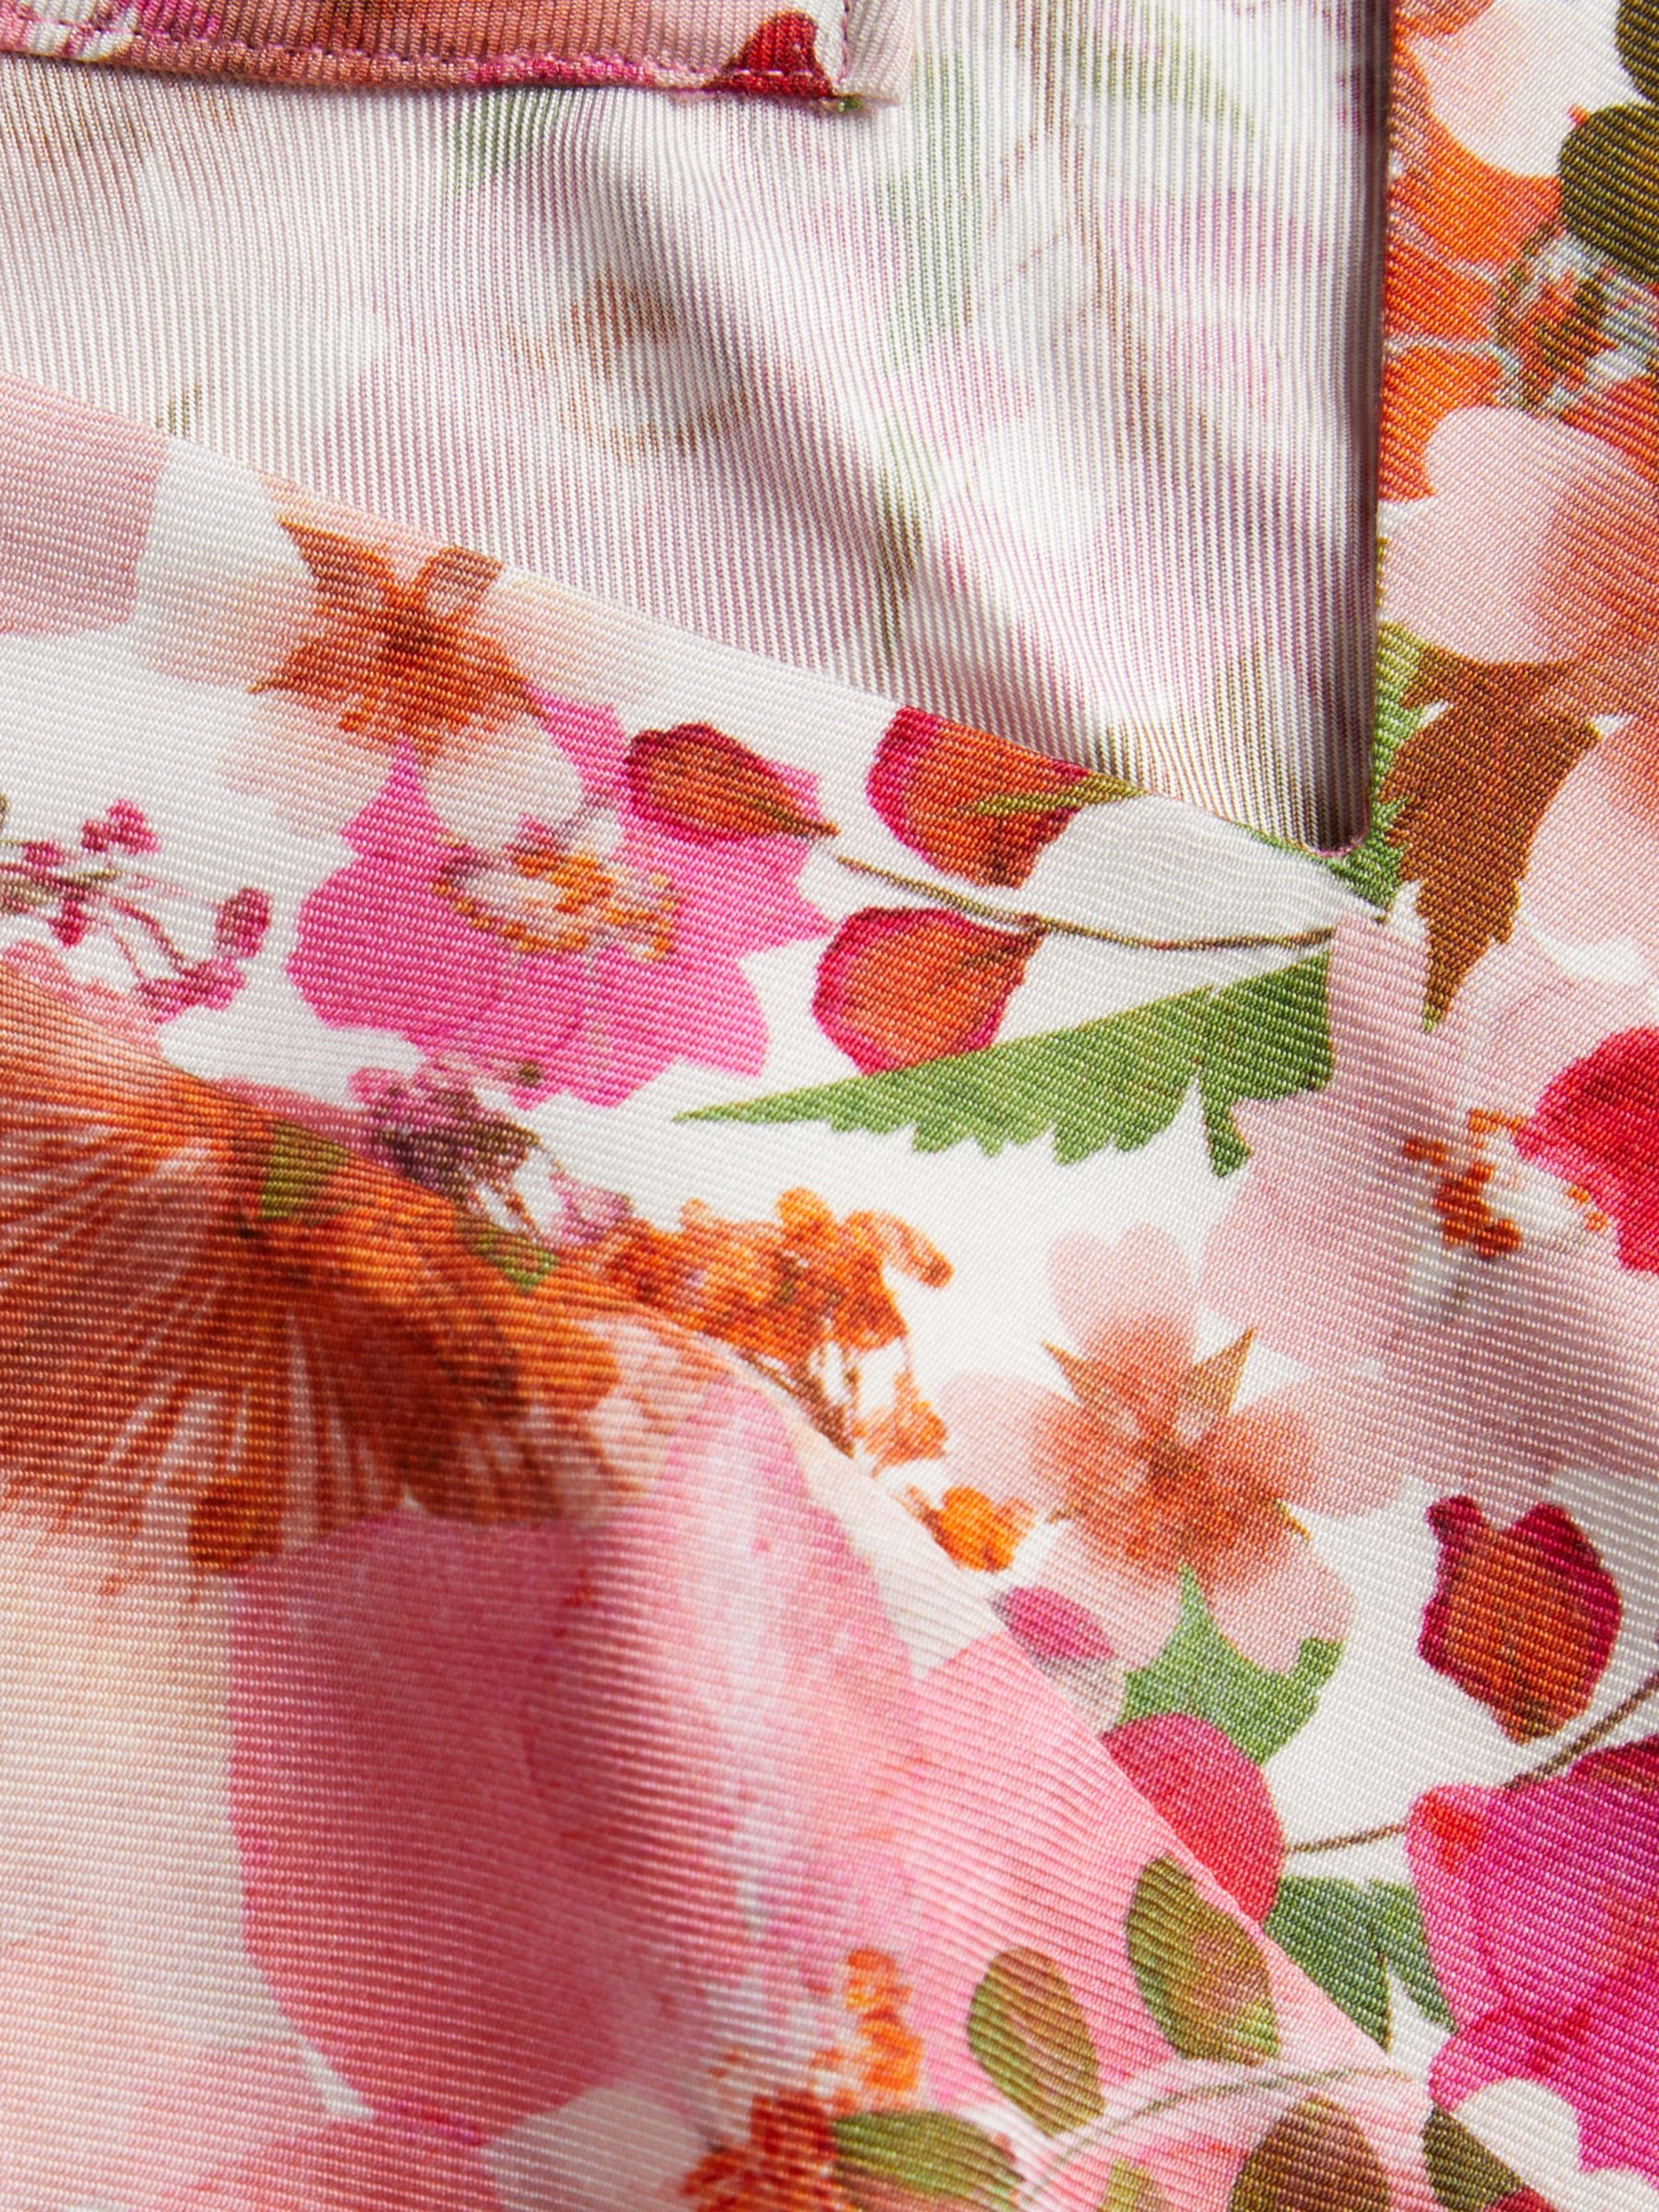 Ted Baker Sorapia Floral Print V-Neck Top, Pink/Multi, 12